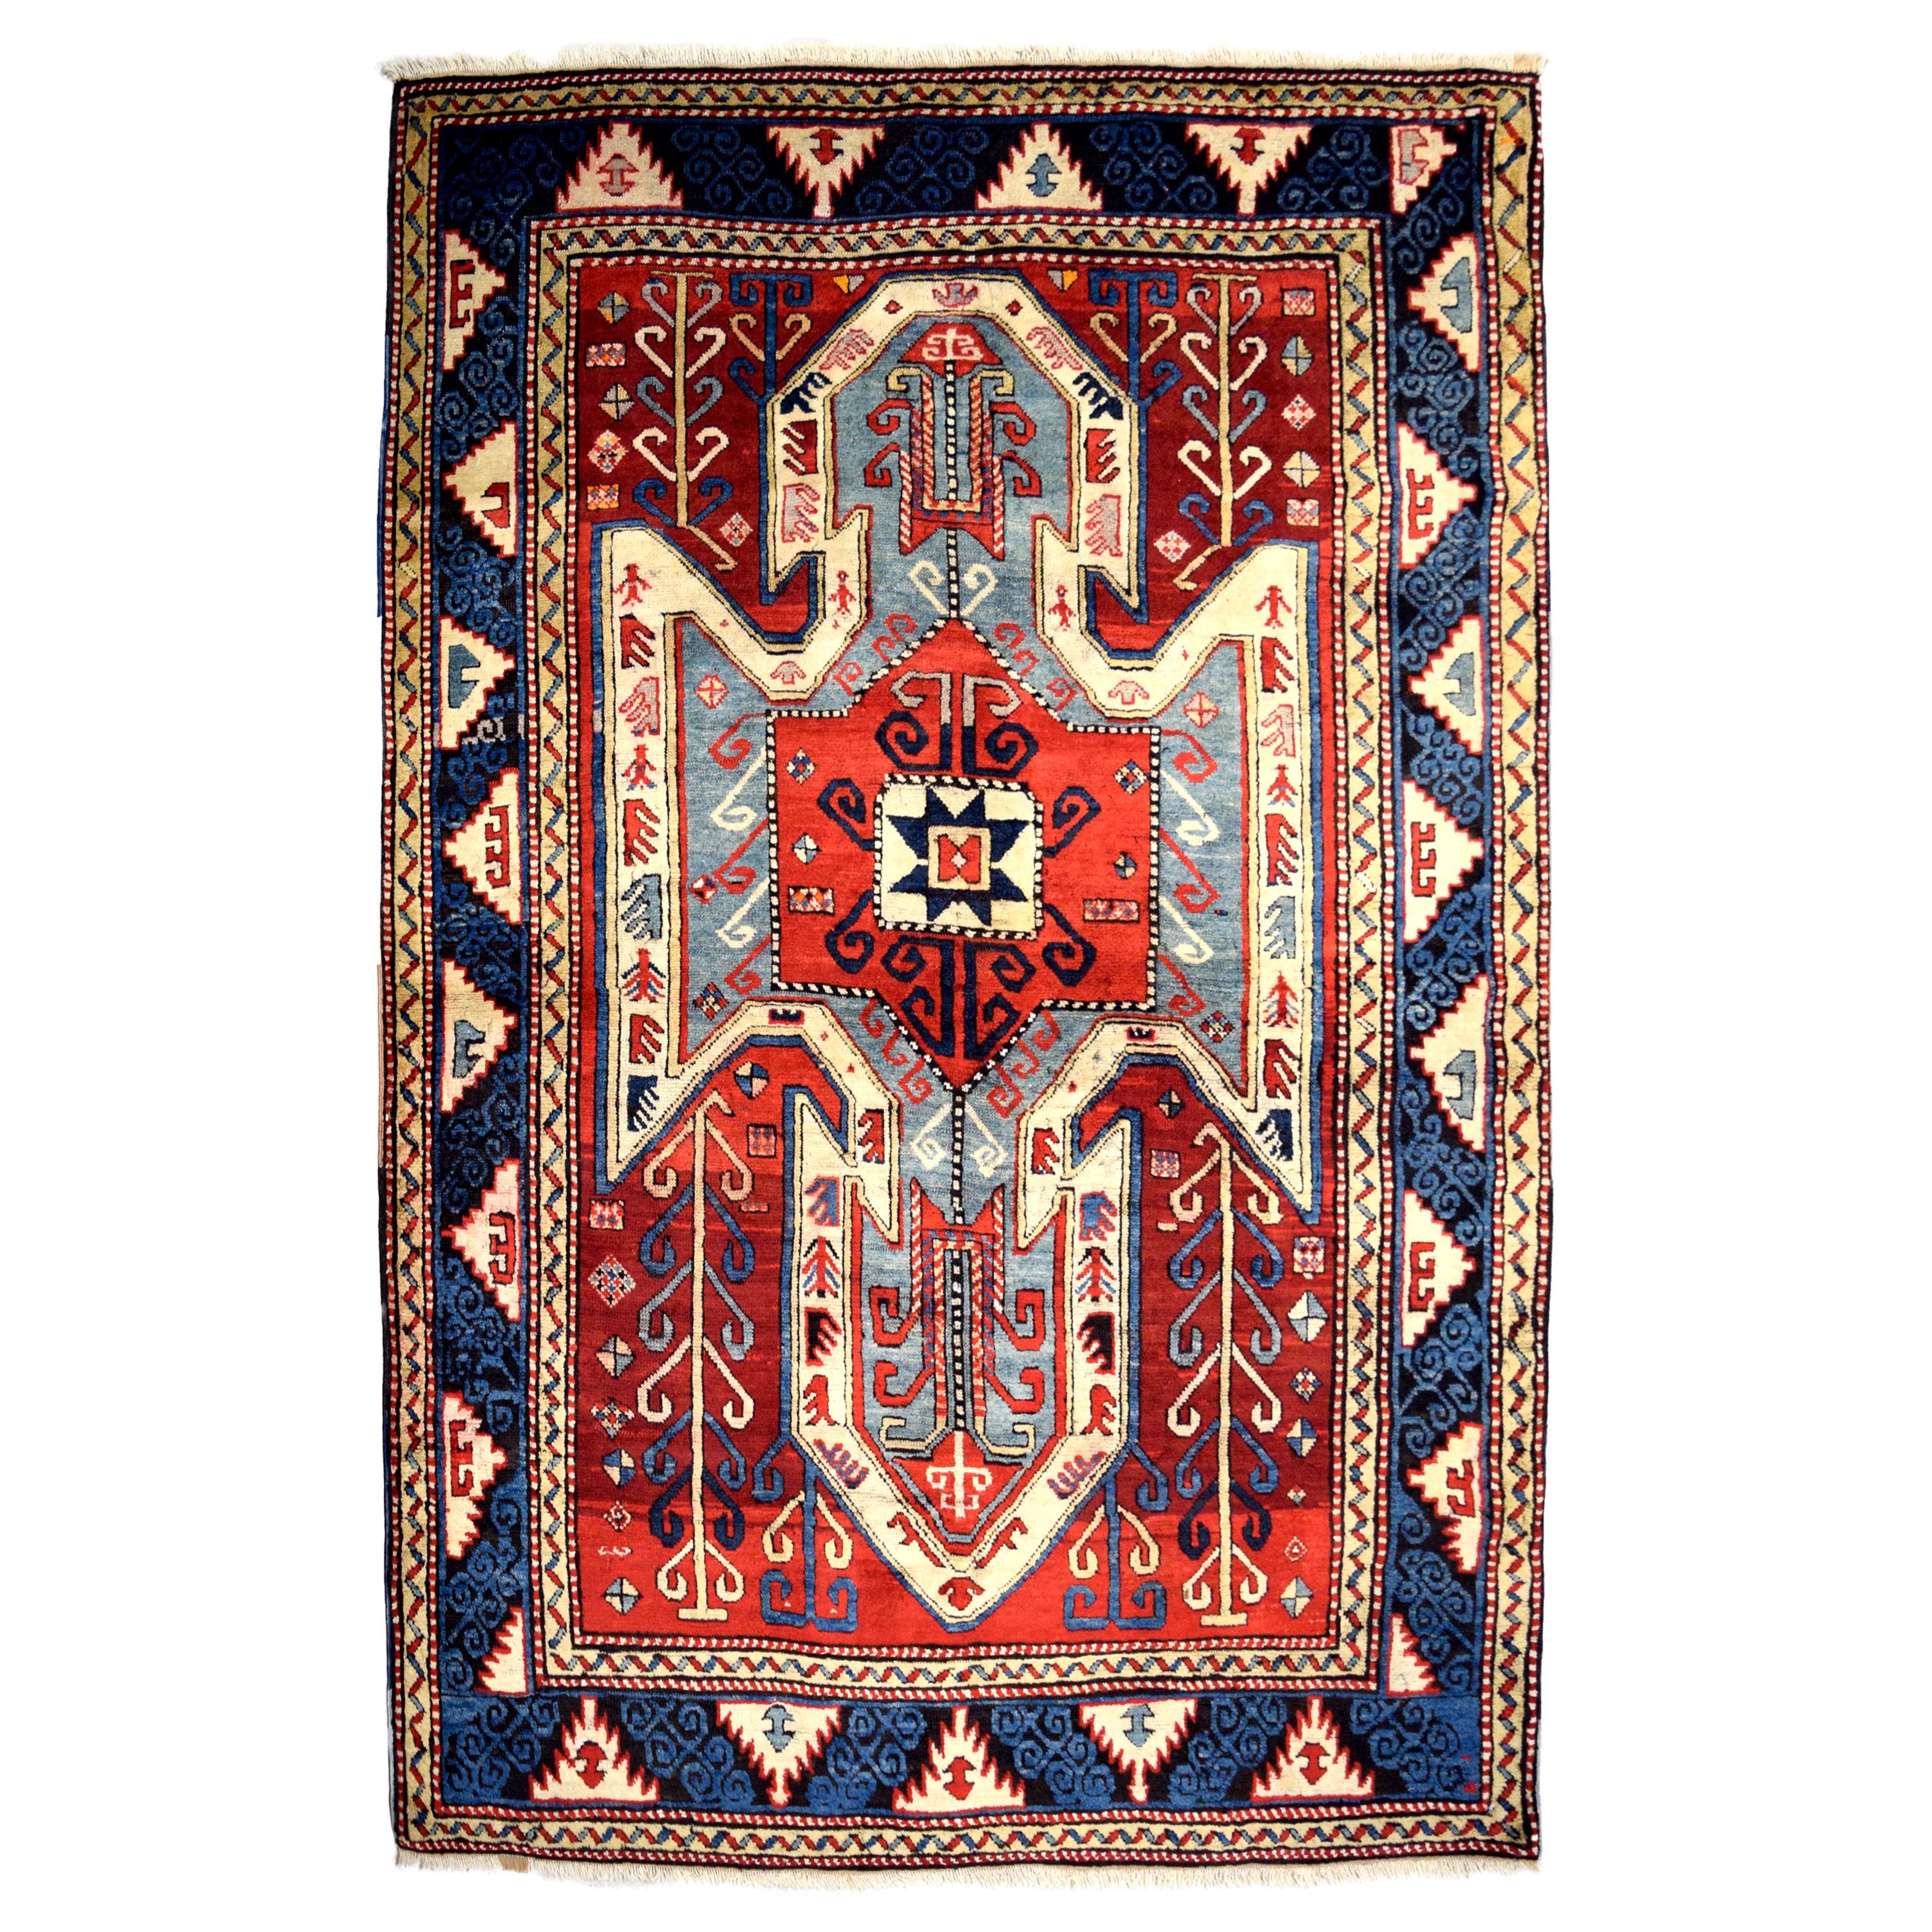 Antiker kaukasischer Teppich aus den 1880er Jahren, rot, blau und cremefarben, 5' x 7'